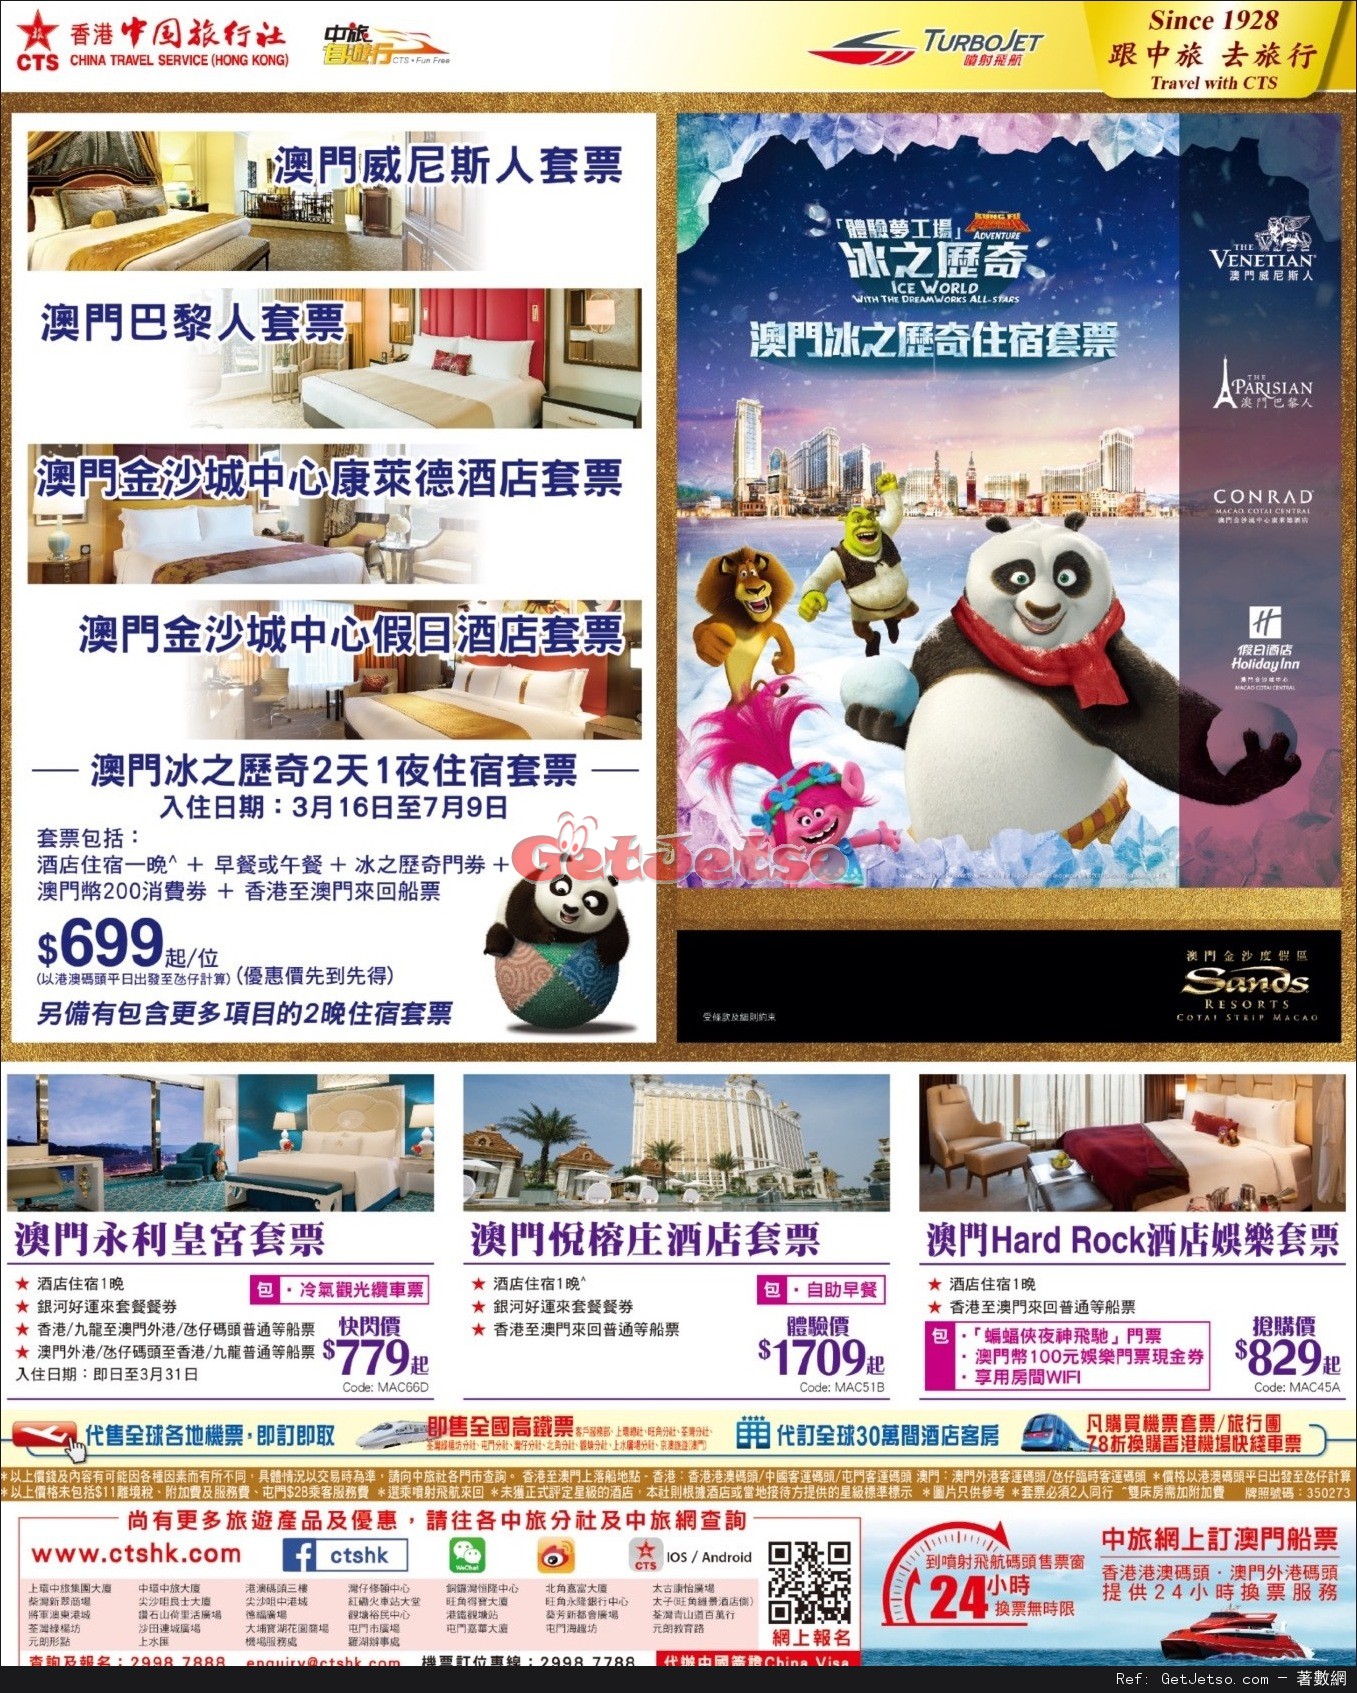 中國旅行社Happy Hour 限時搶購/澳門套票優惠(至17年3月20日)圖片1